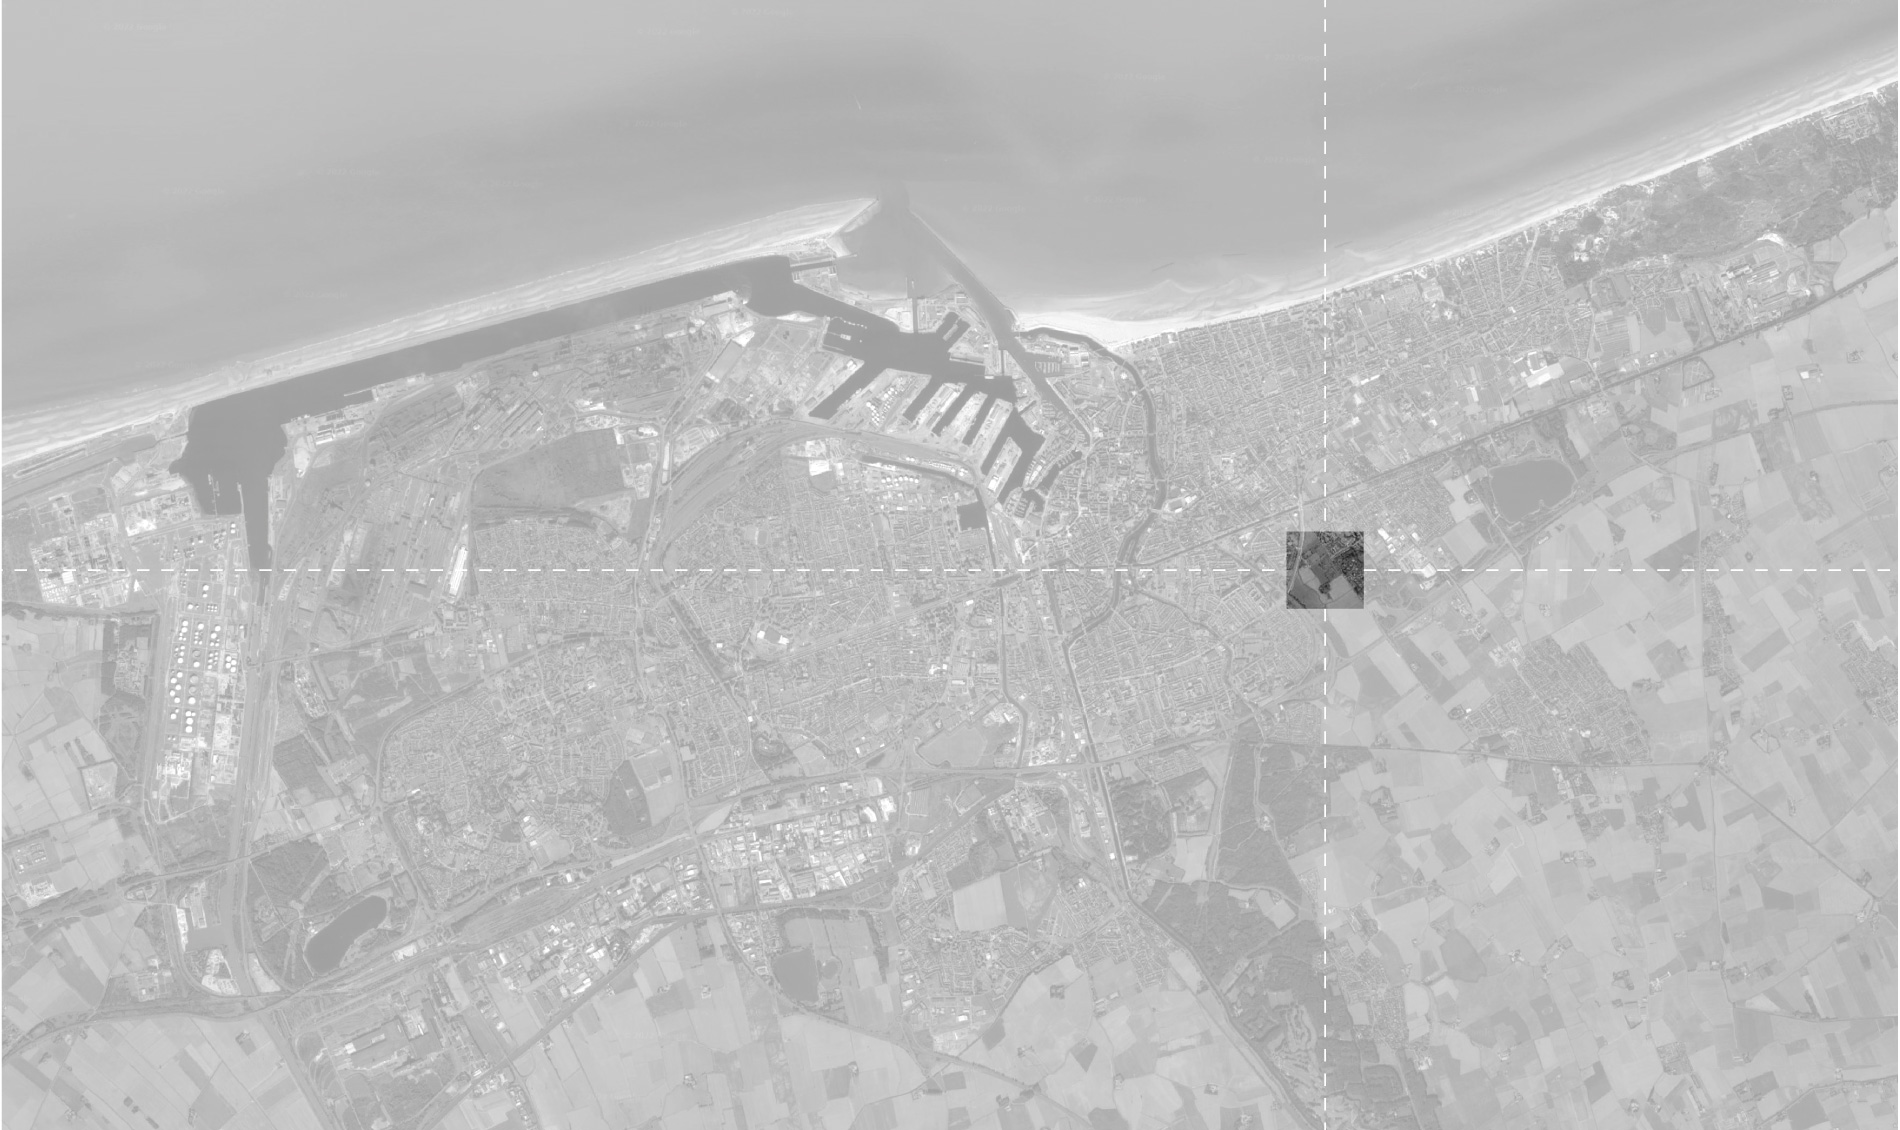 Carte de situation d'un projet de logement à Dunkerque entre Coudekerque-Branche et le quartier de Téteghem